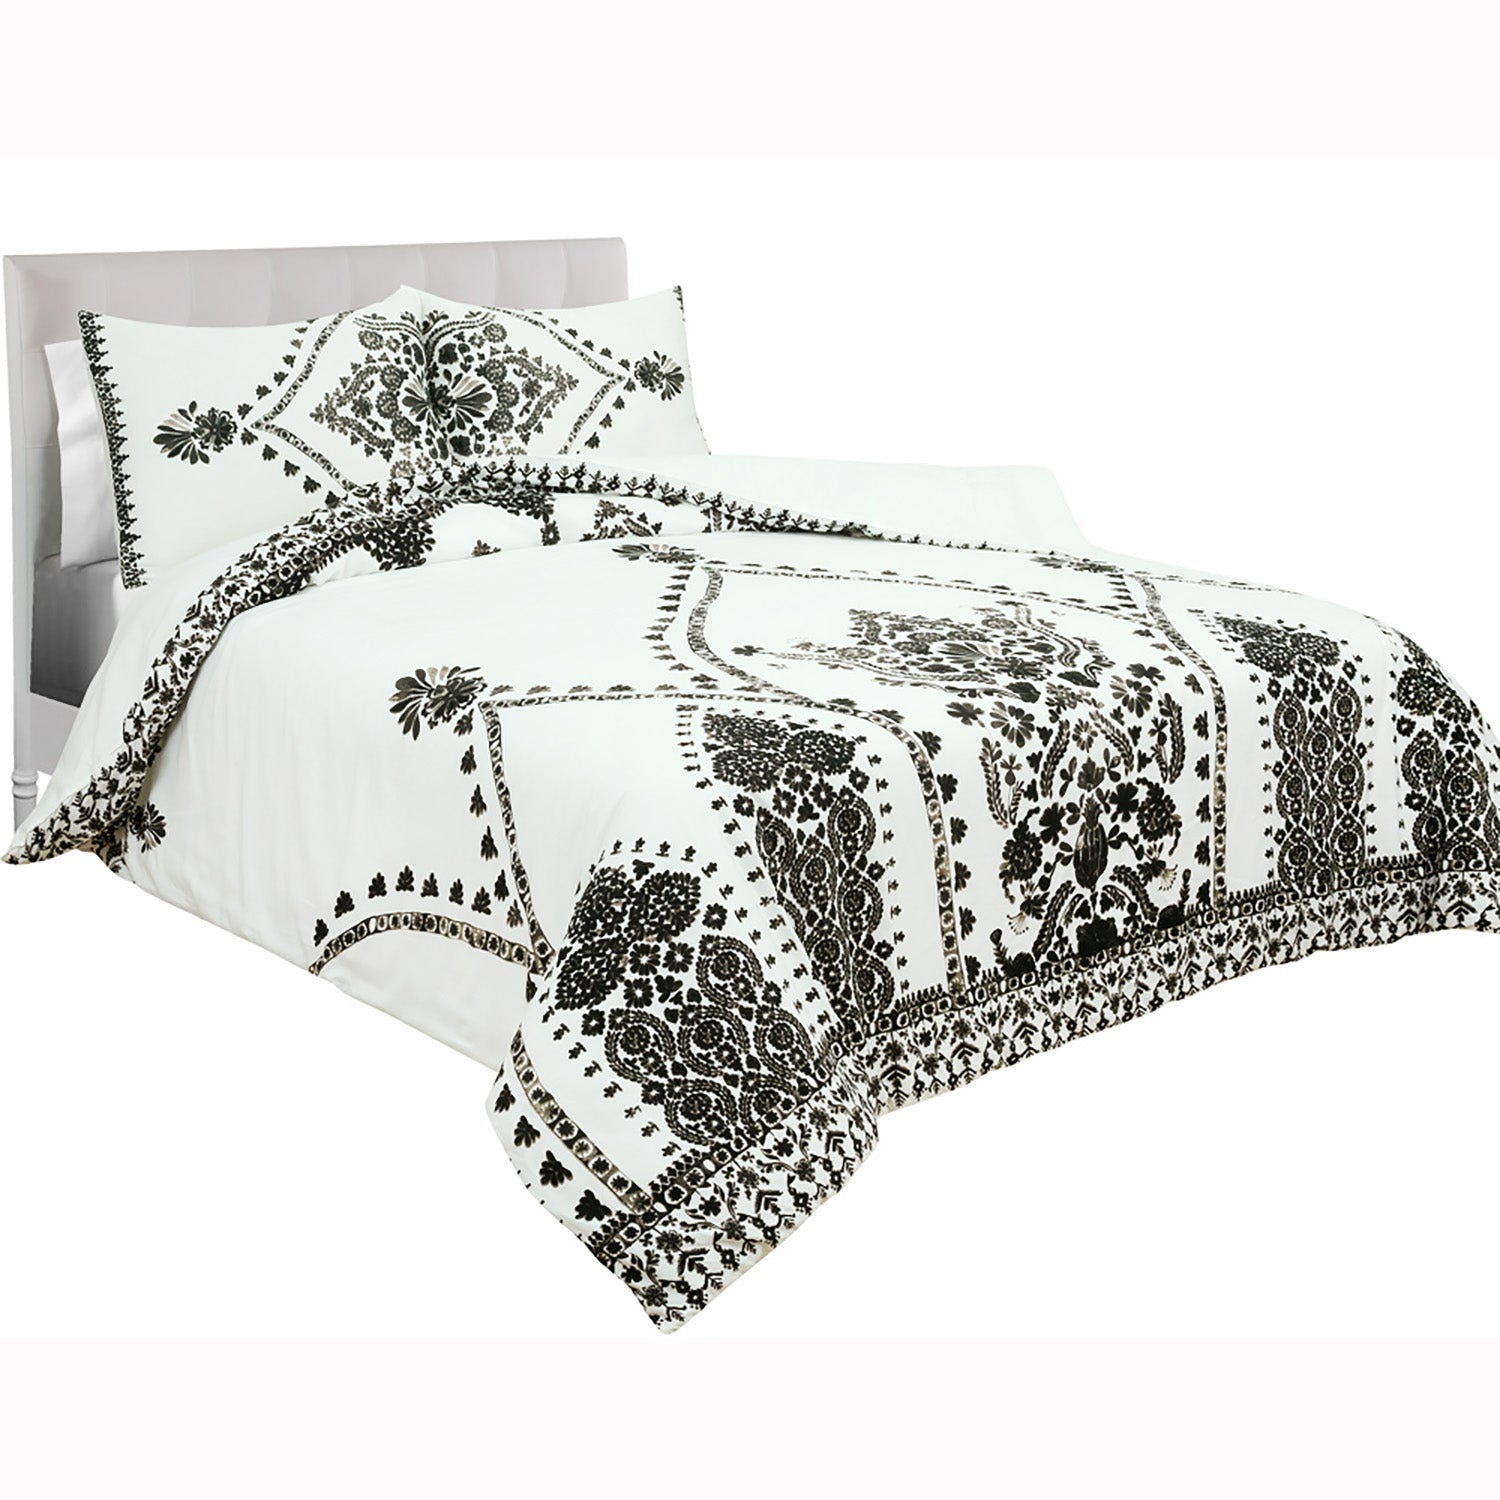 3-Piece: Global Varanasi Cotton Comforter Set